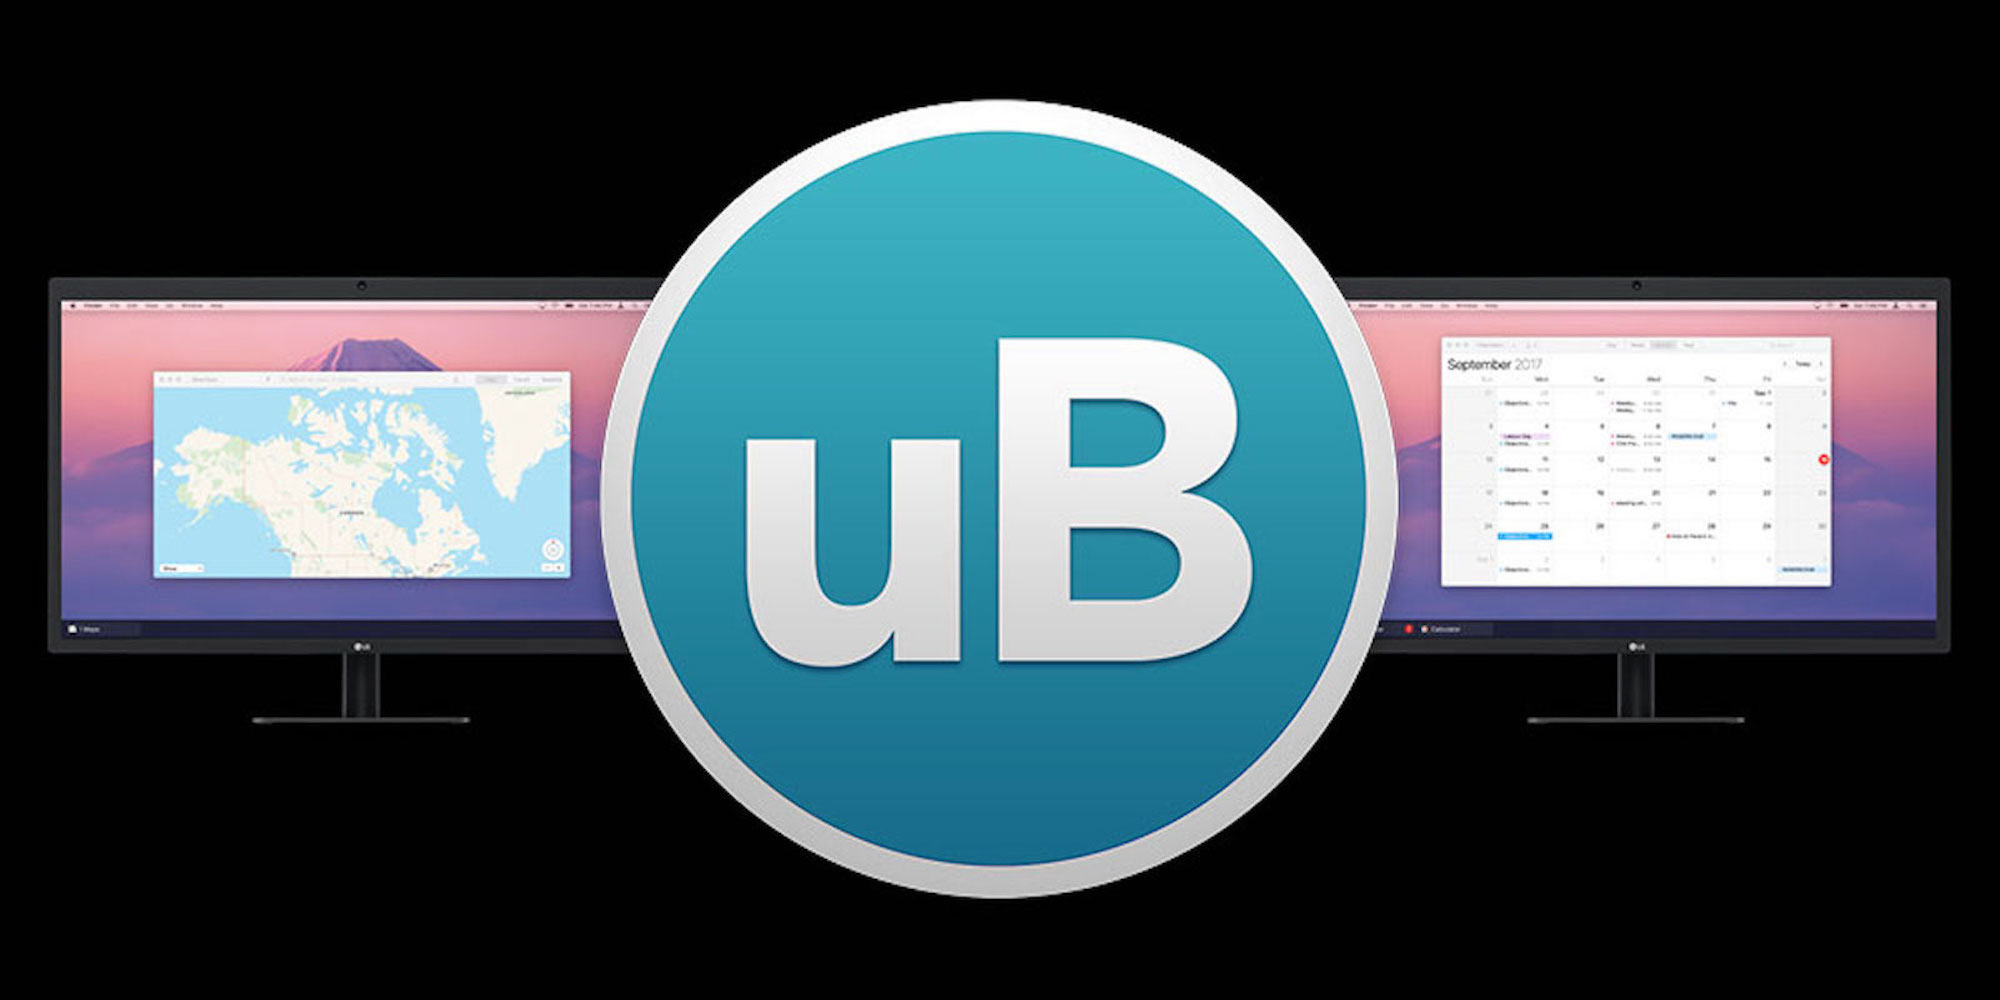 ubar 4 toolbar for mac